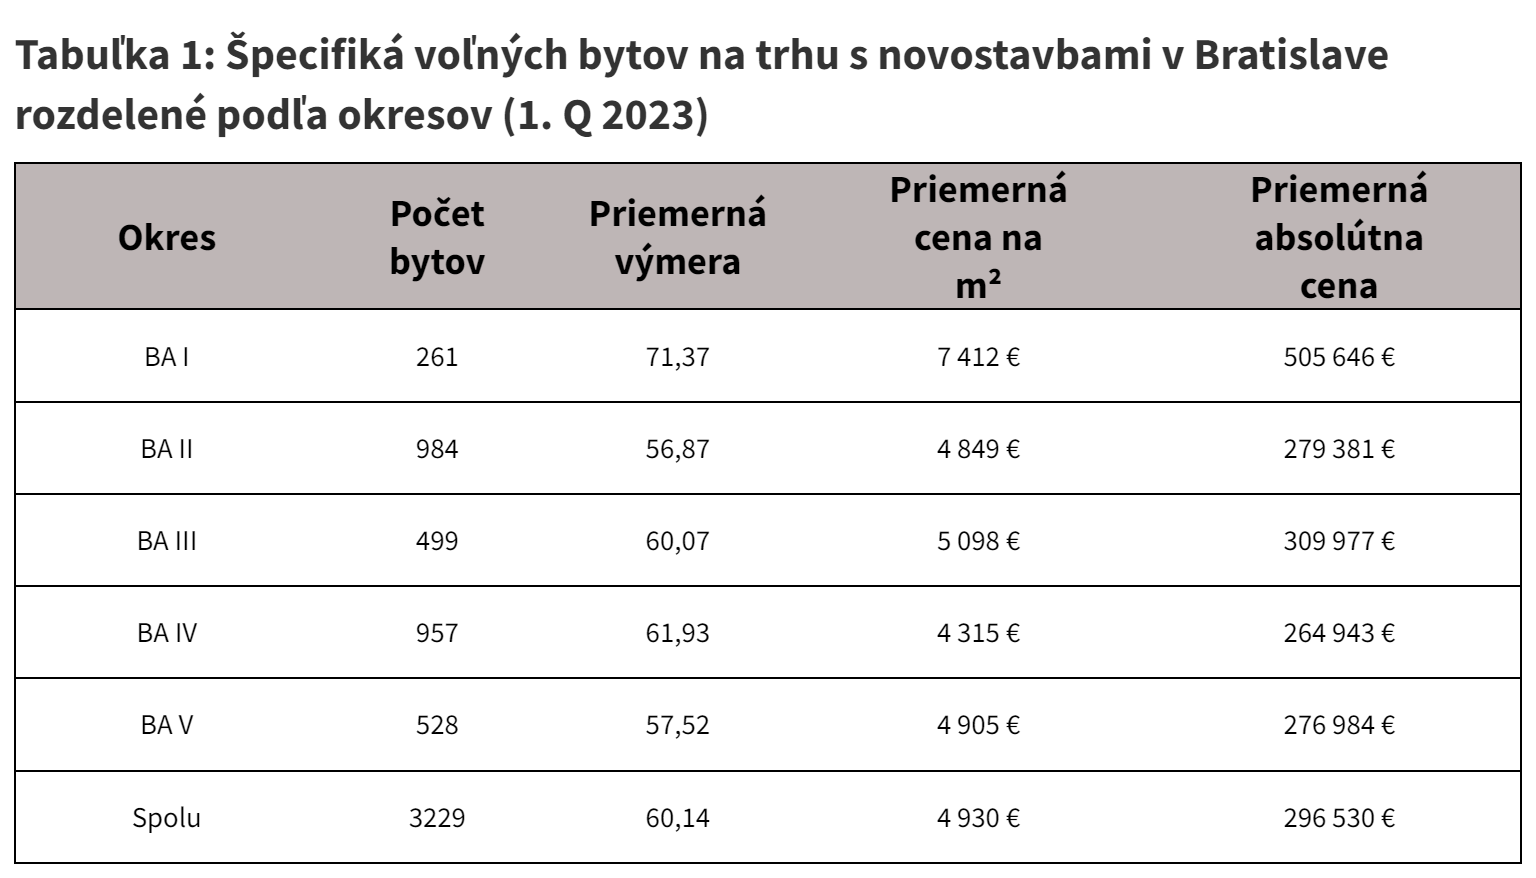 Tabuľka 1: Špecifiká voľných bytov na trhu s novostavbami v Bratislave rozdelené podľa okresov (1. Q 2023).